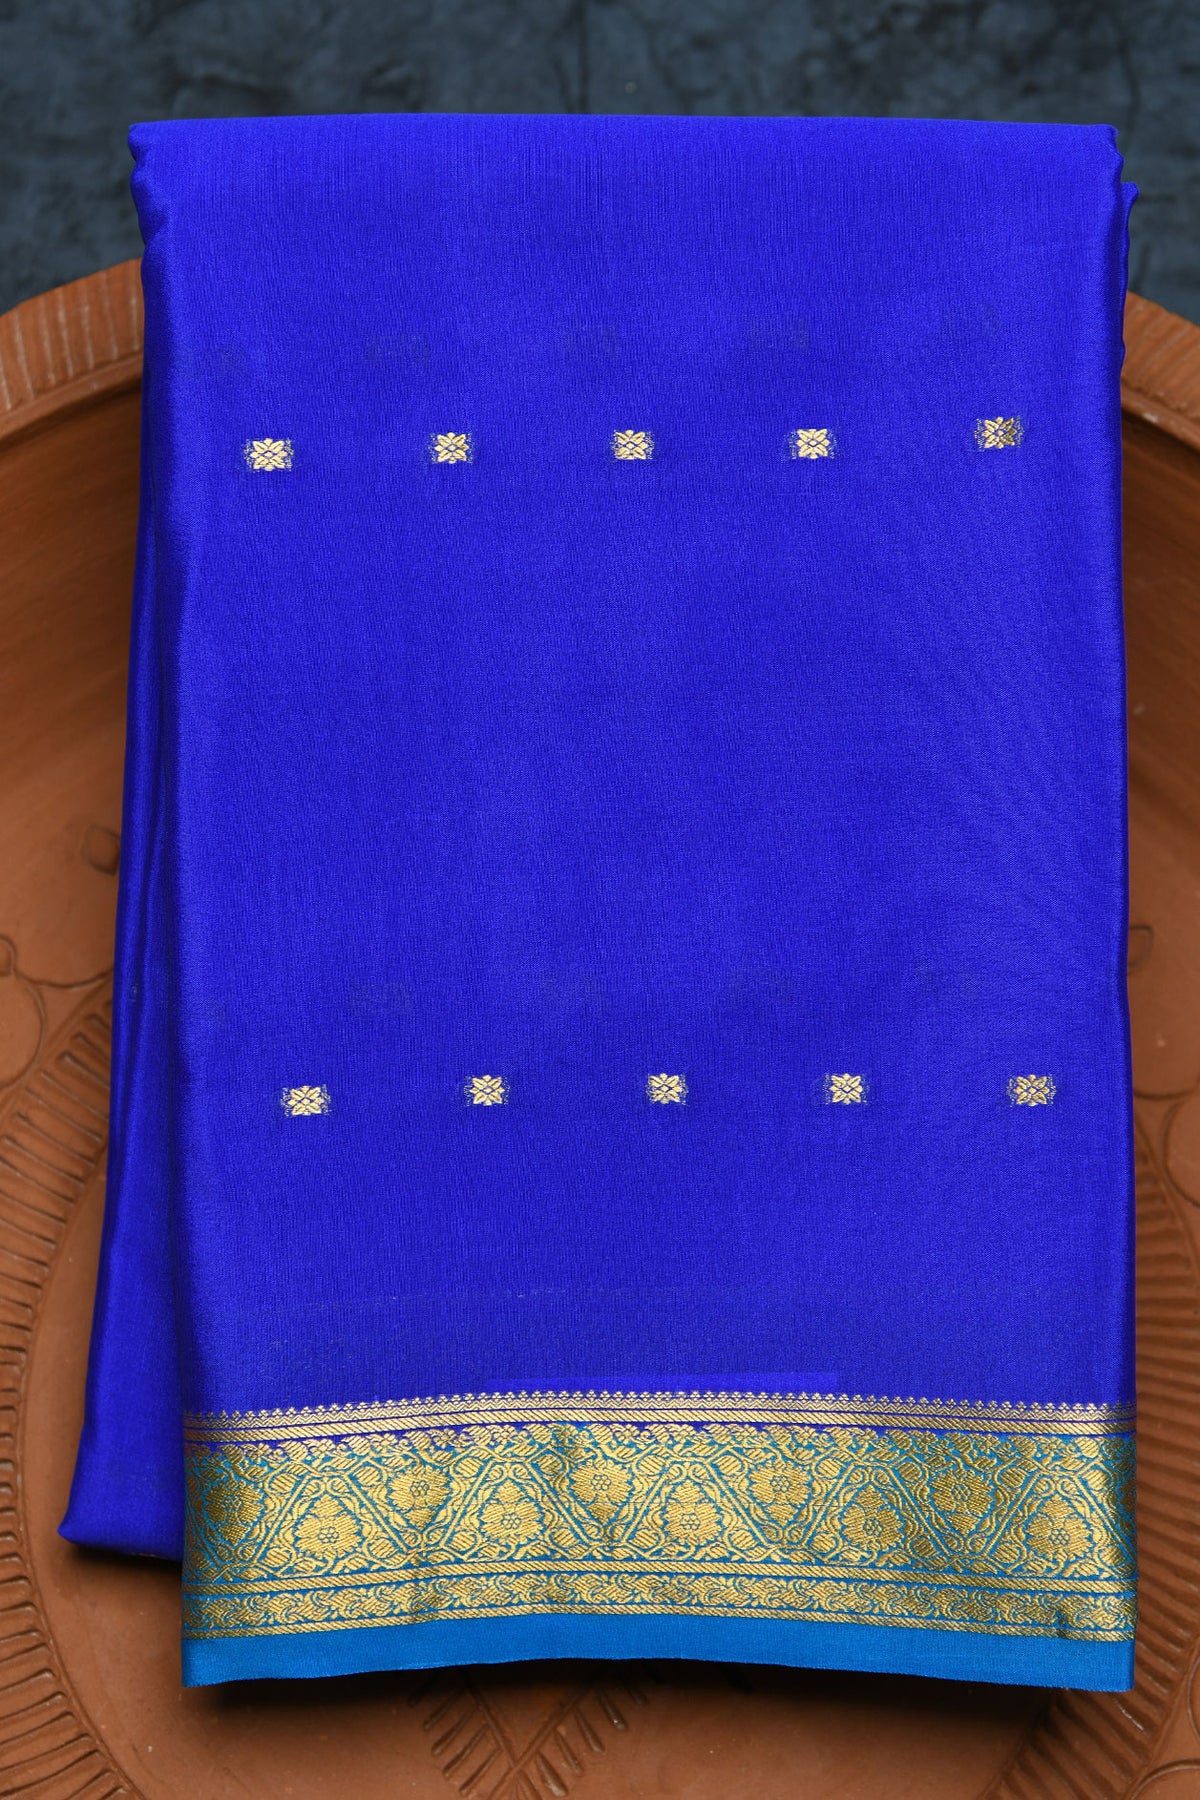 Small Zari Border In Buttis Azure Blue Mysore Silk Saree